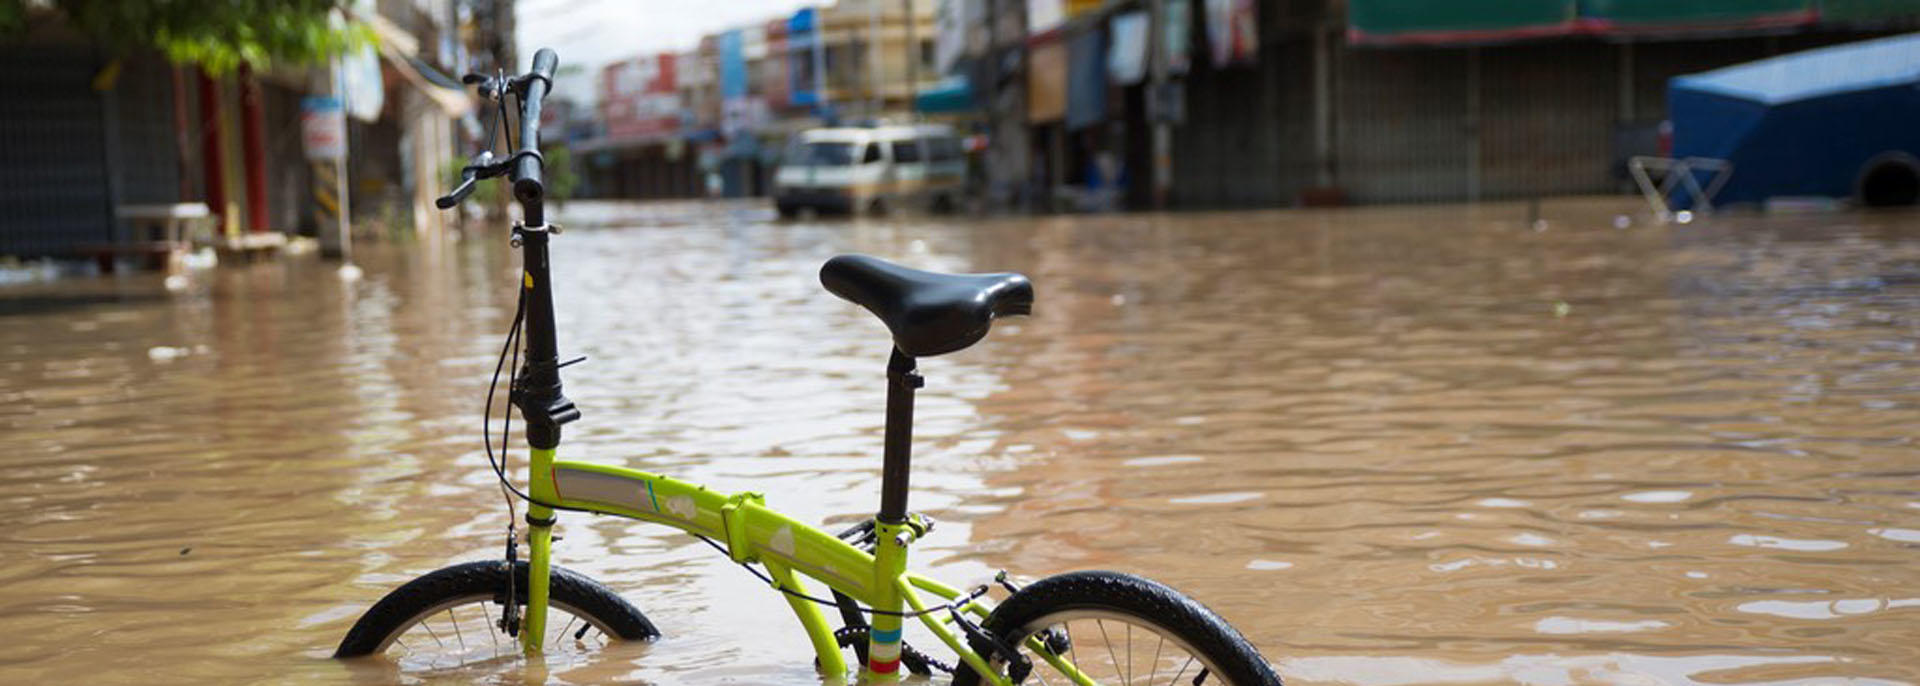 bike in flooded street